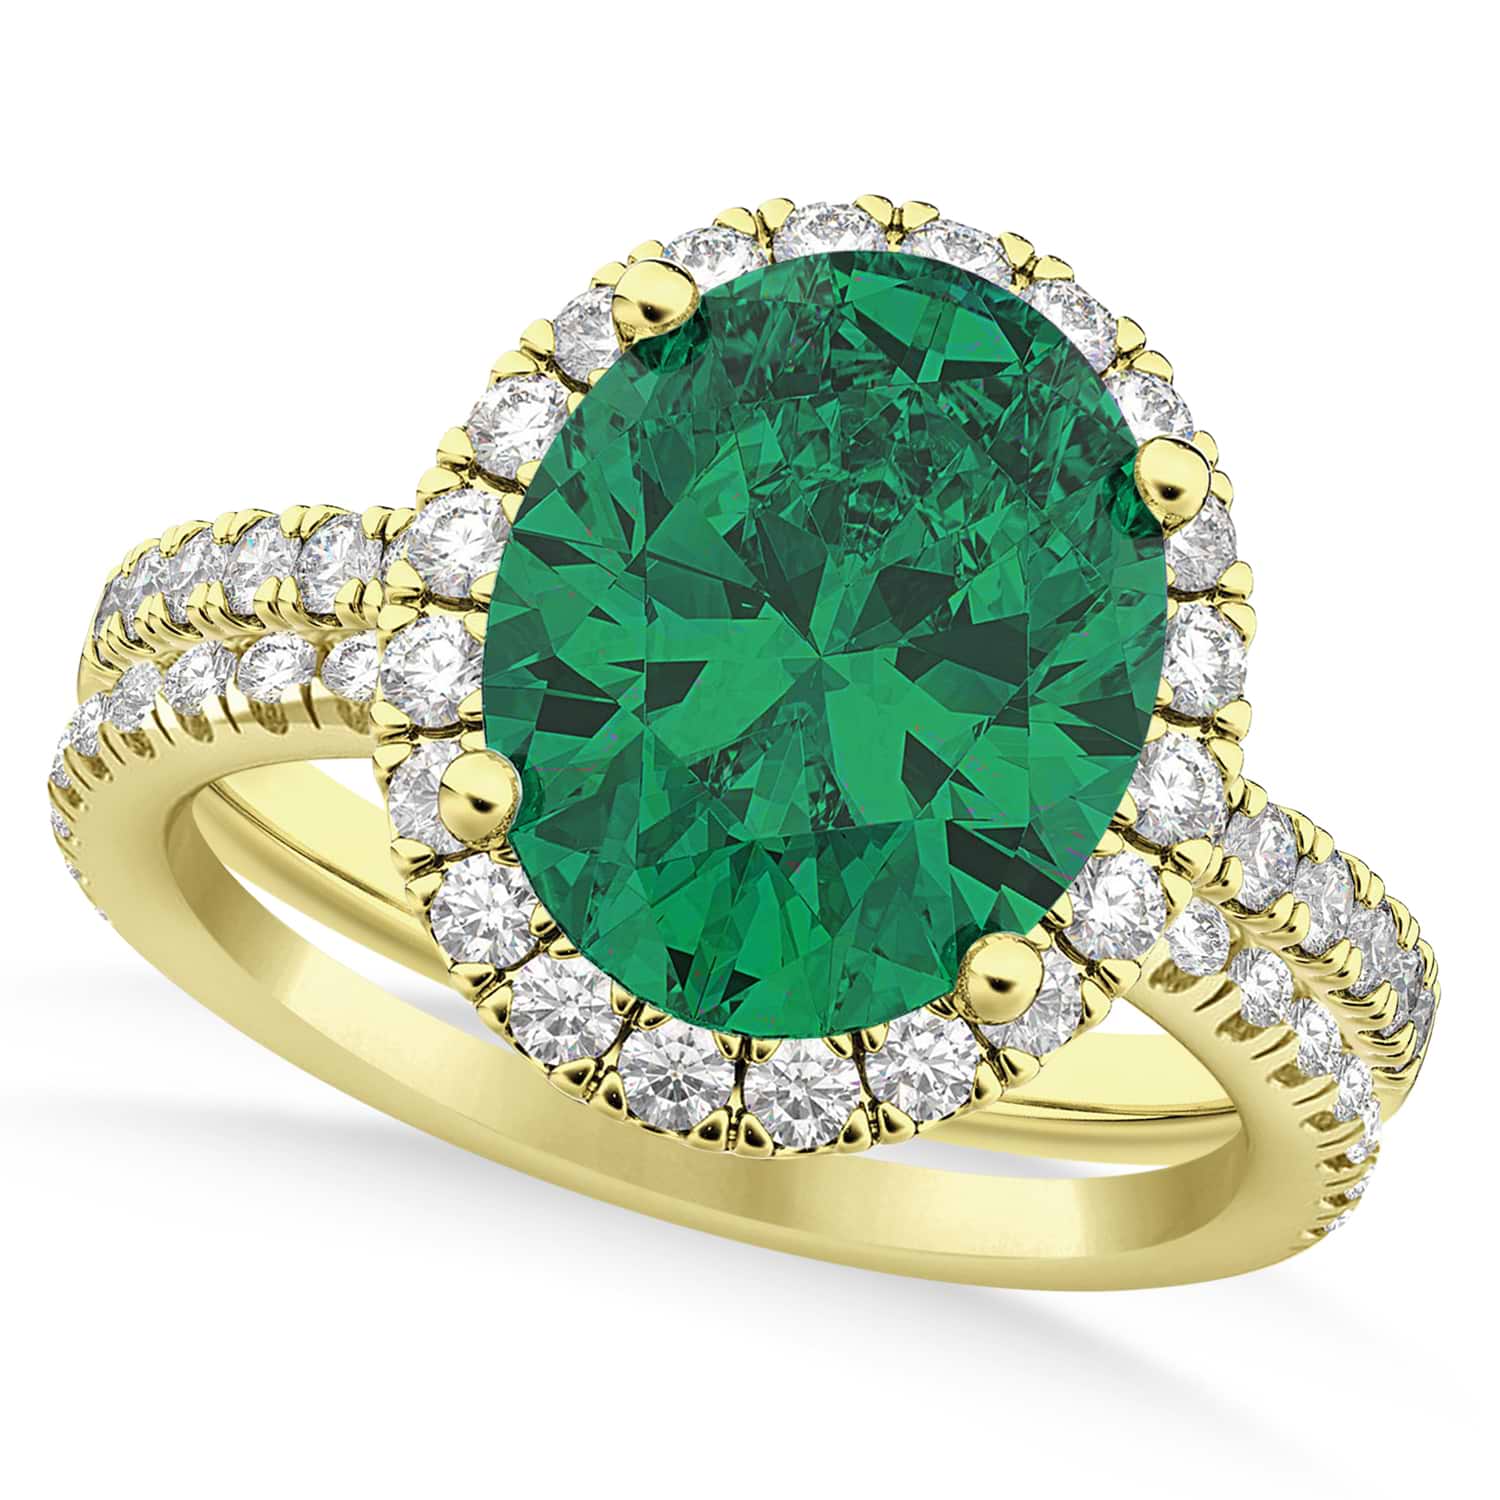 Emerald & Diamonds Oval-Cut Halo Bridal Set 14K Yellow Gold (3.38ct)